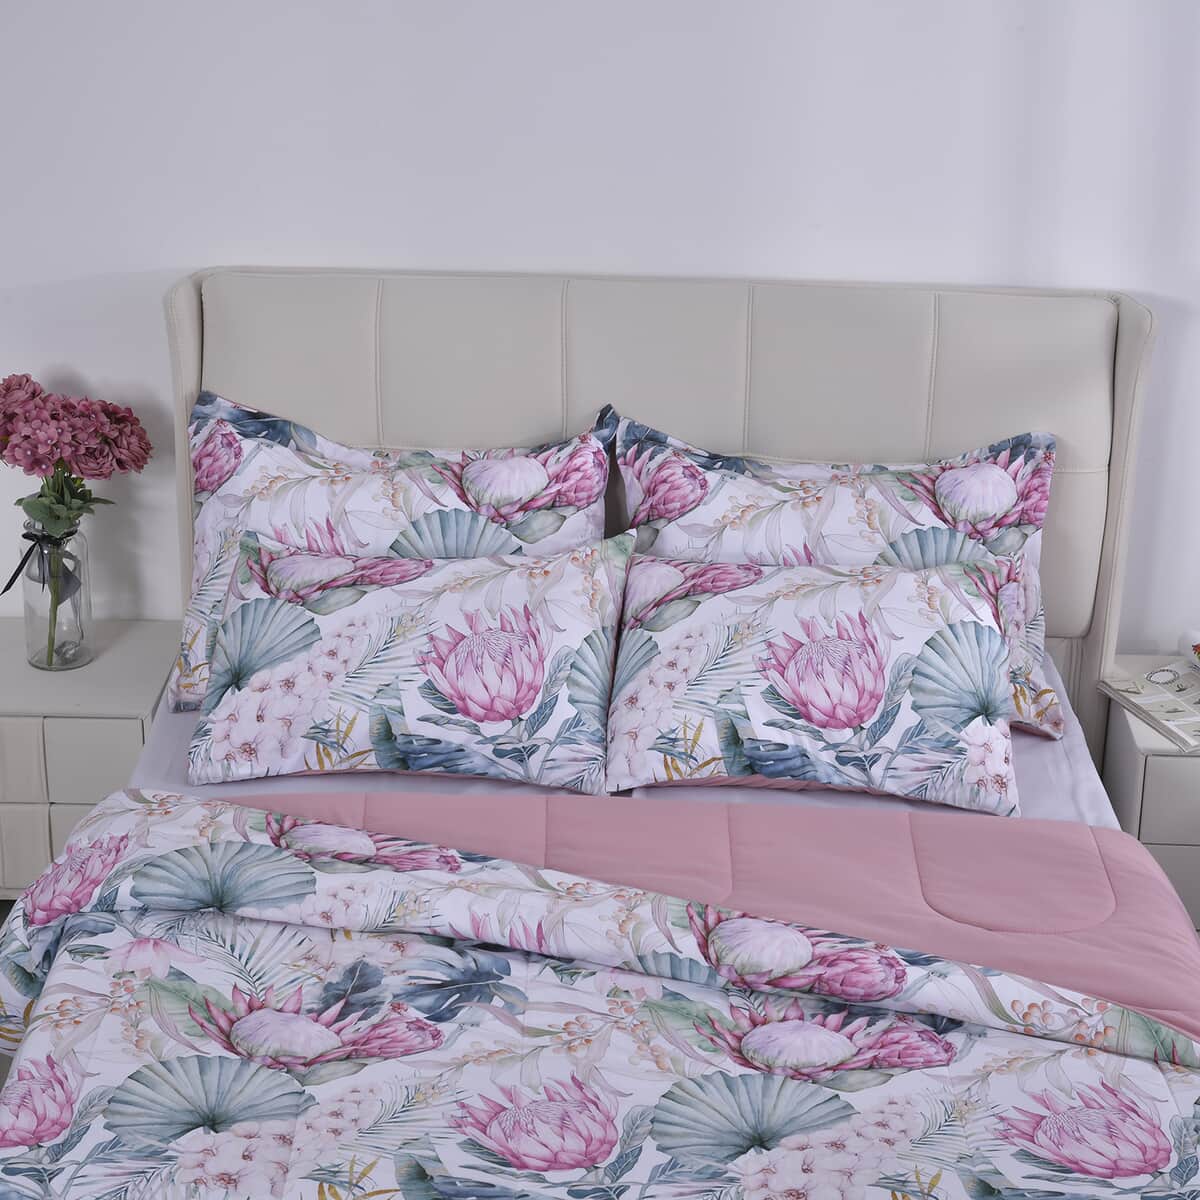 Homesmart Pink Digital Floral Printed Polyester 5pcs Comforter Set - King image number 3